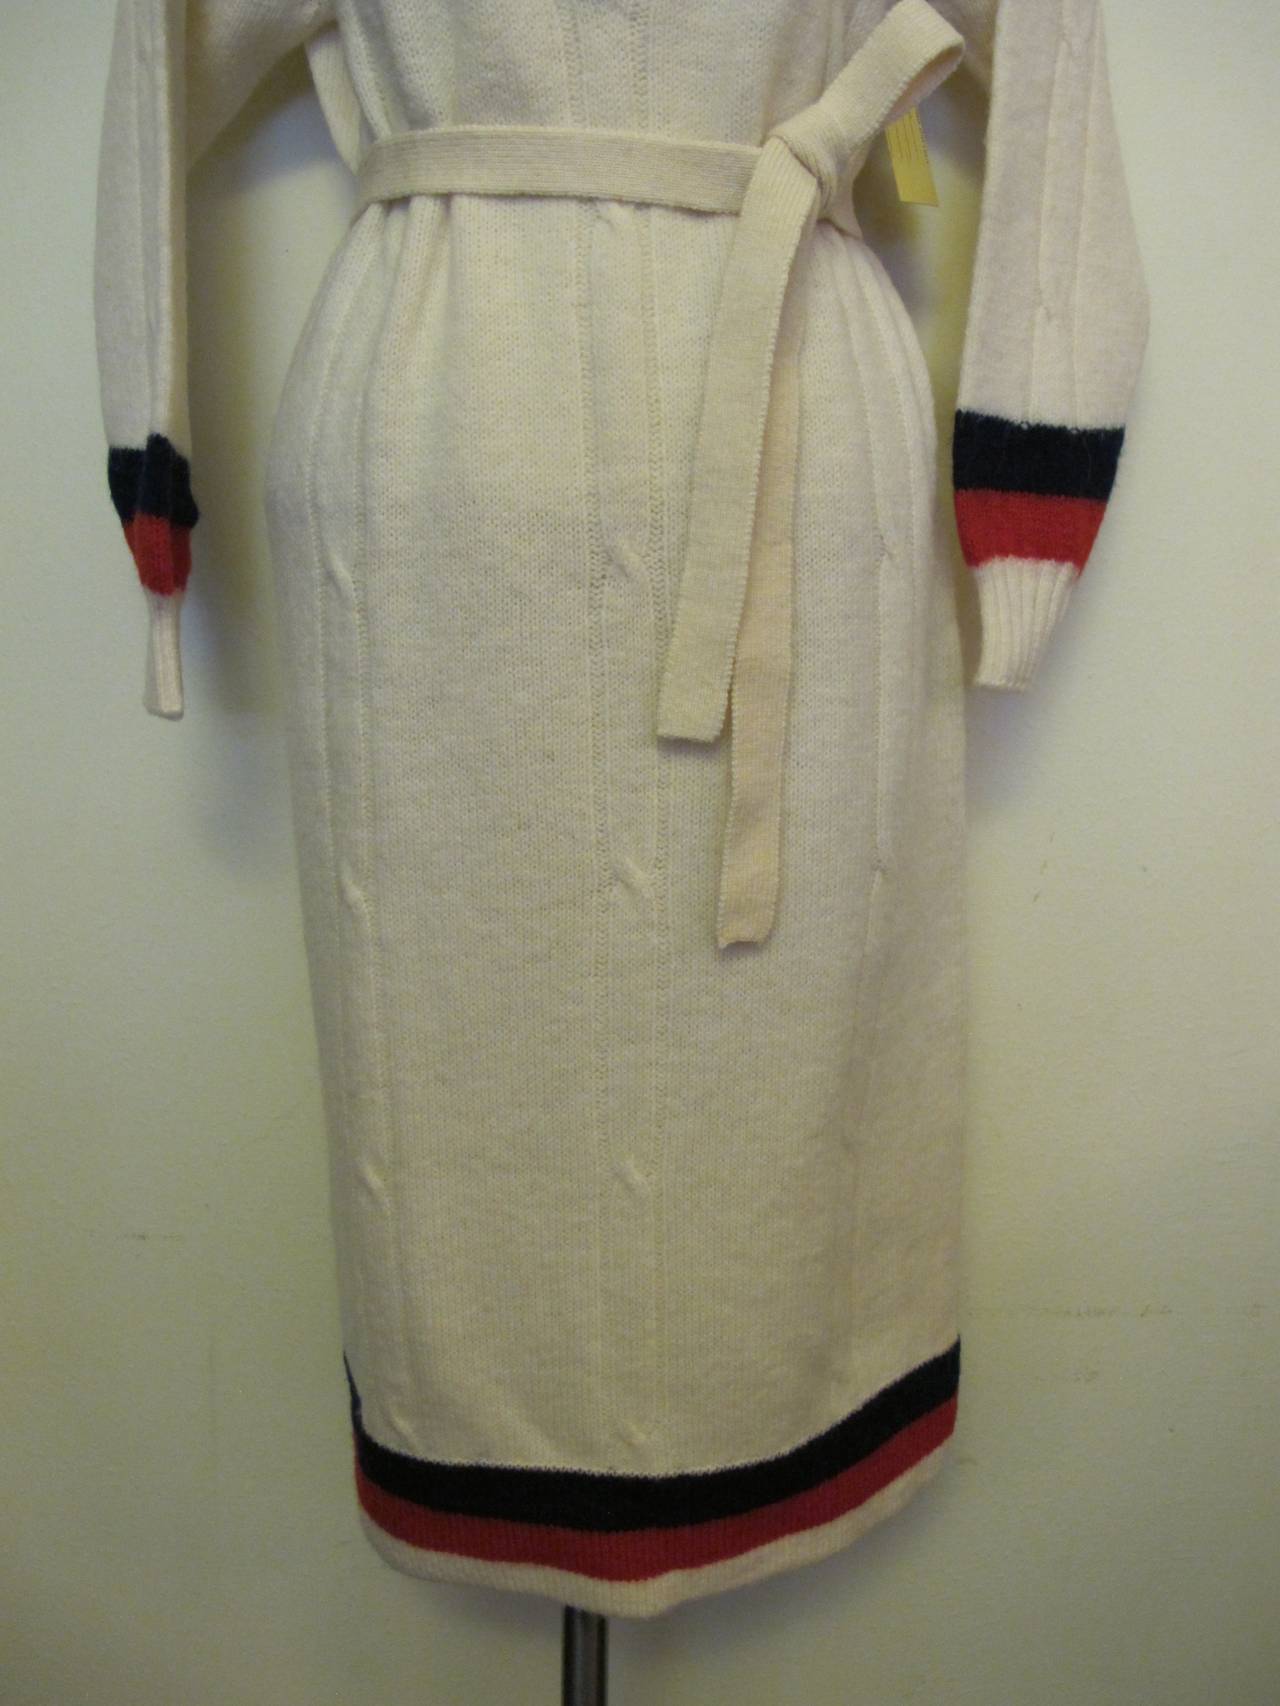 New Pringle 1950's Sweater Dress for Robert Kirk, Ltd. For Sale 1